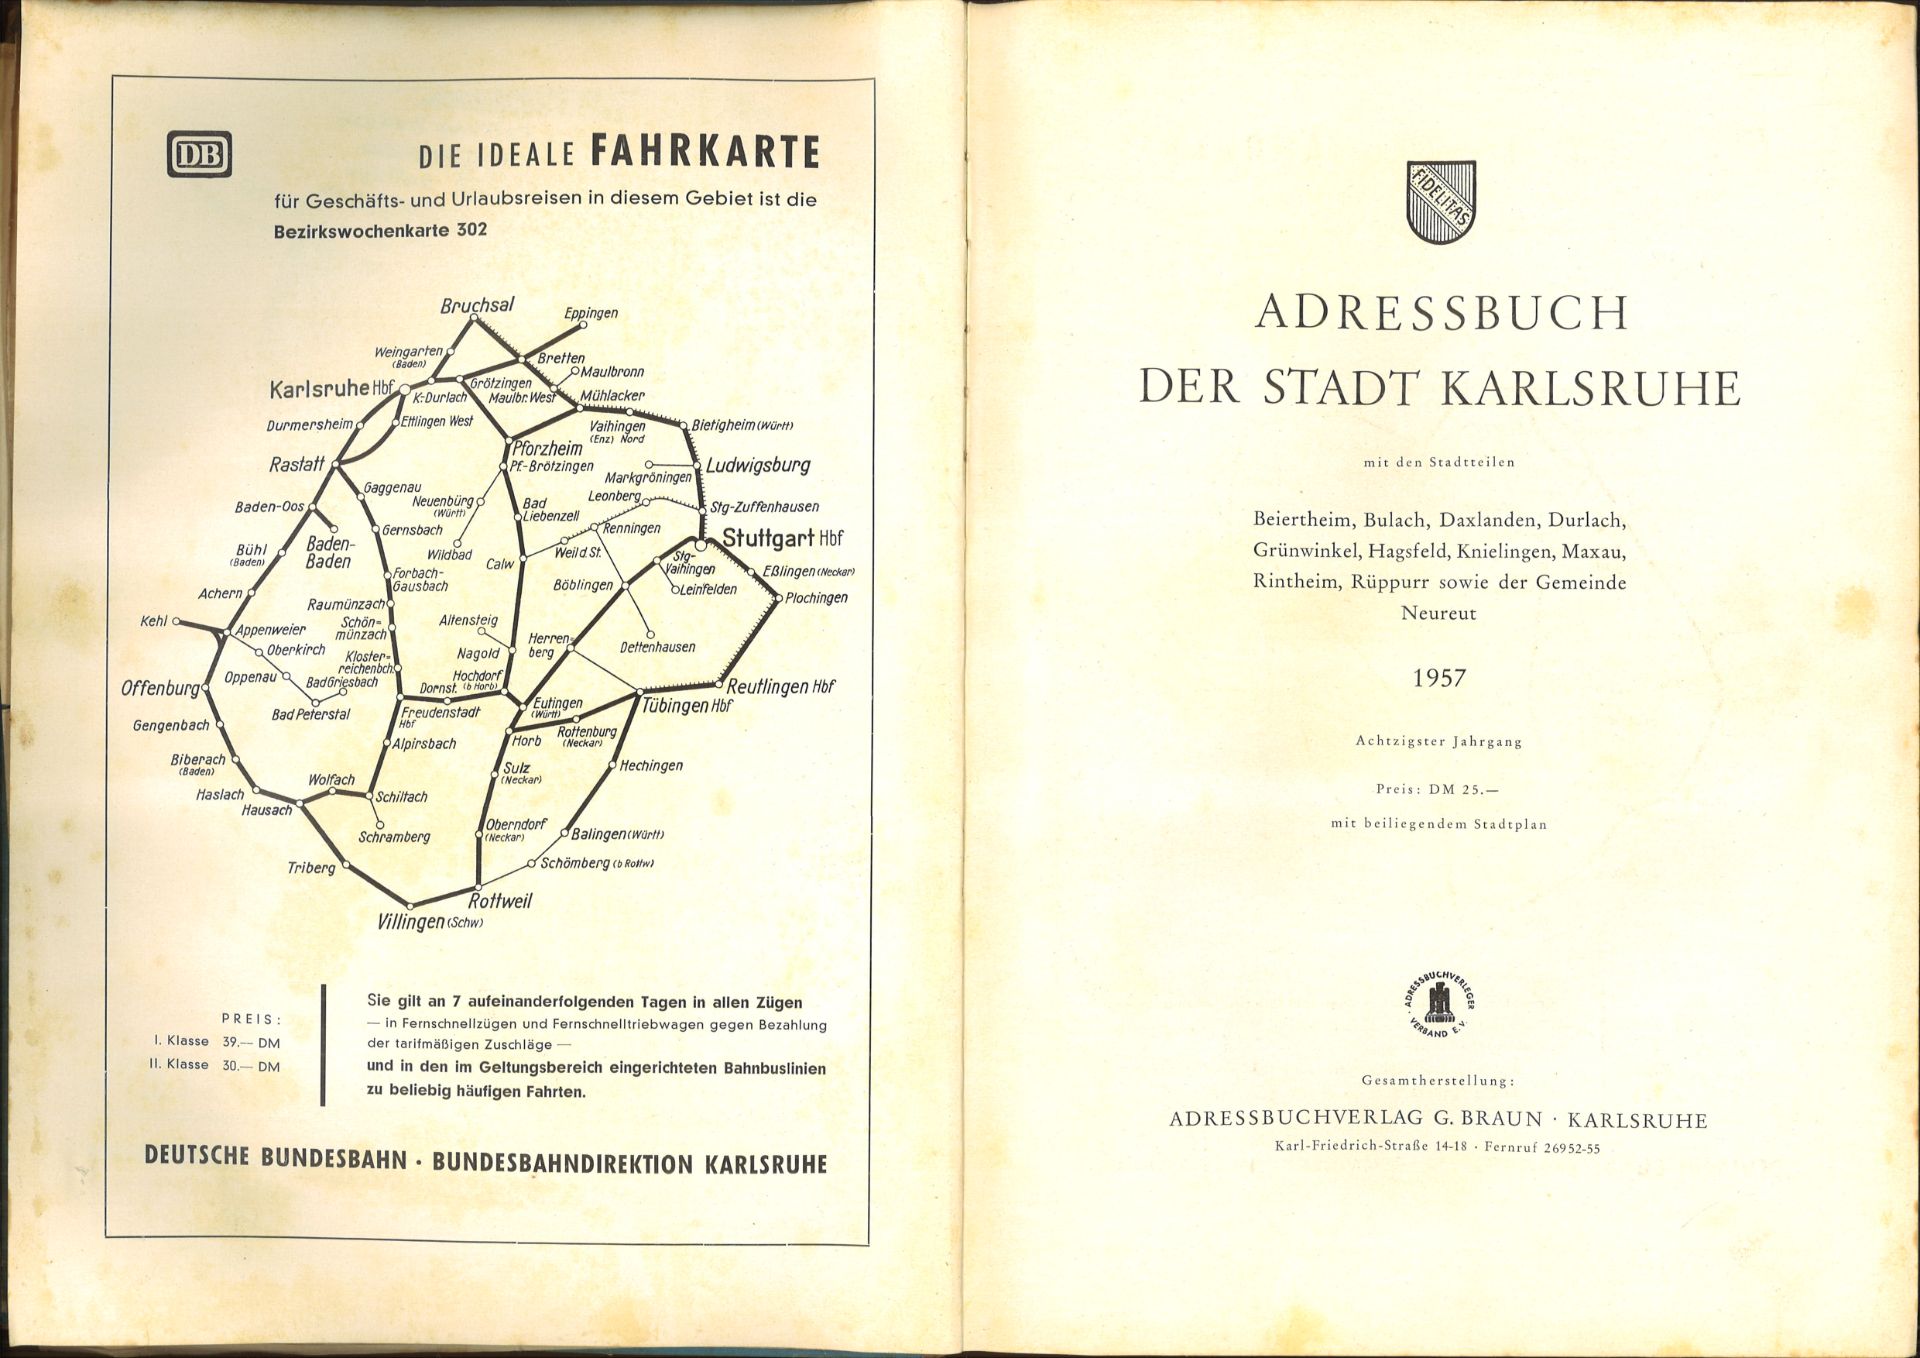 Adressbuch der Stadt Karlsruhe von 1957, achtzigster Jahrgang, Einband beschädigt und einige lose - Image 2 of 2